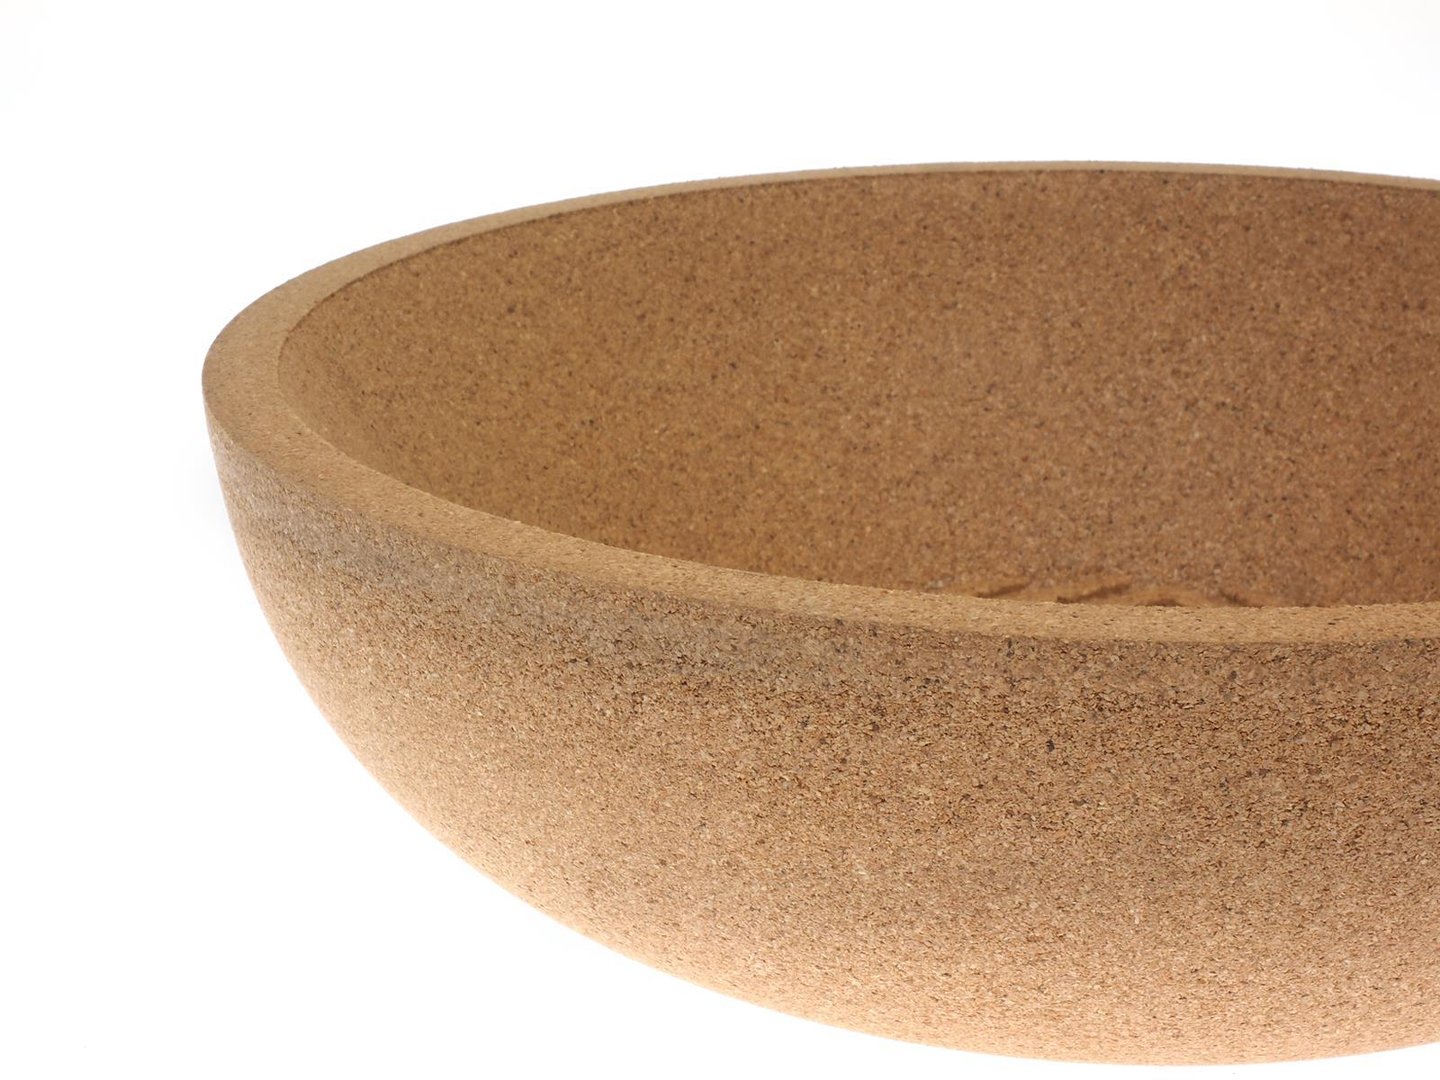 7302 L Fruit bowl Cork bowl 3